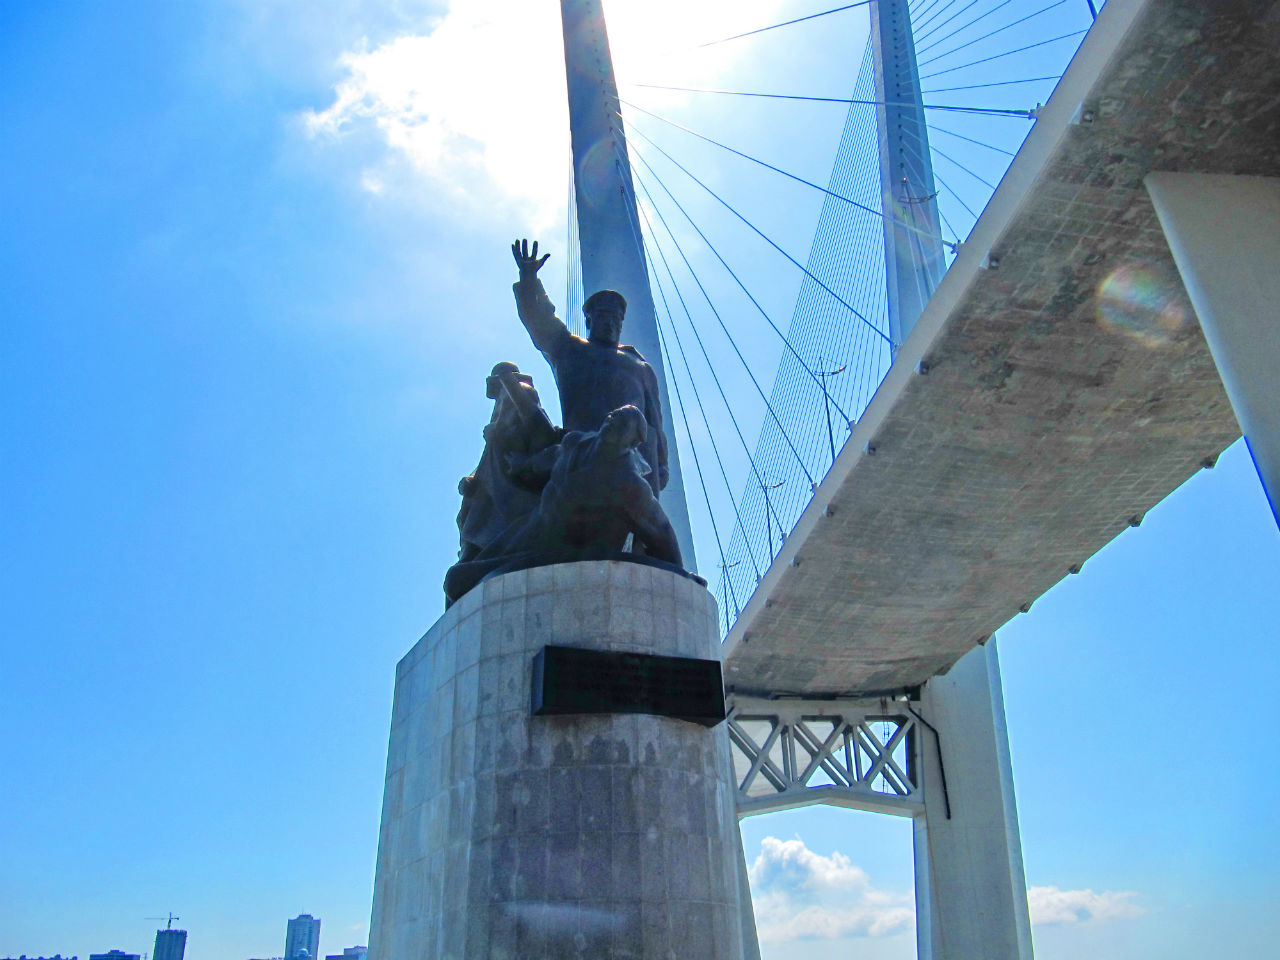 Памятник Морякам торгового флота / Monument to Seamen of Trade Fleet